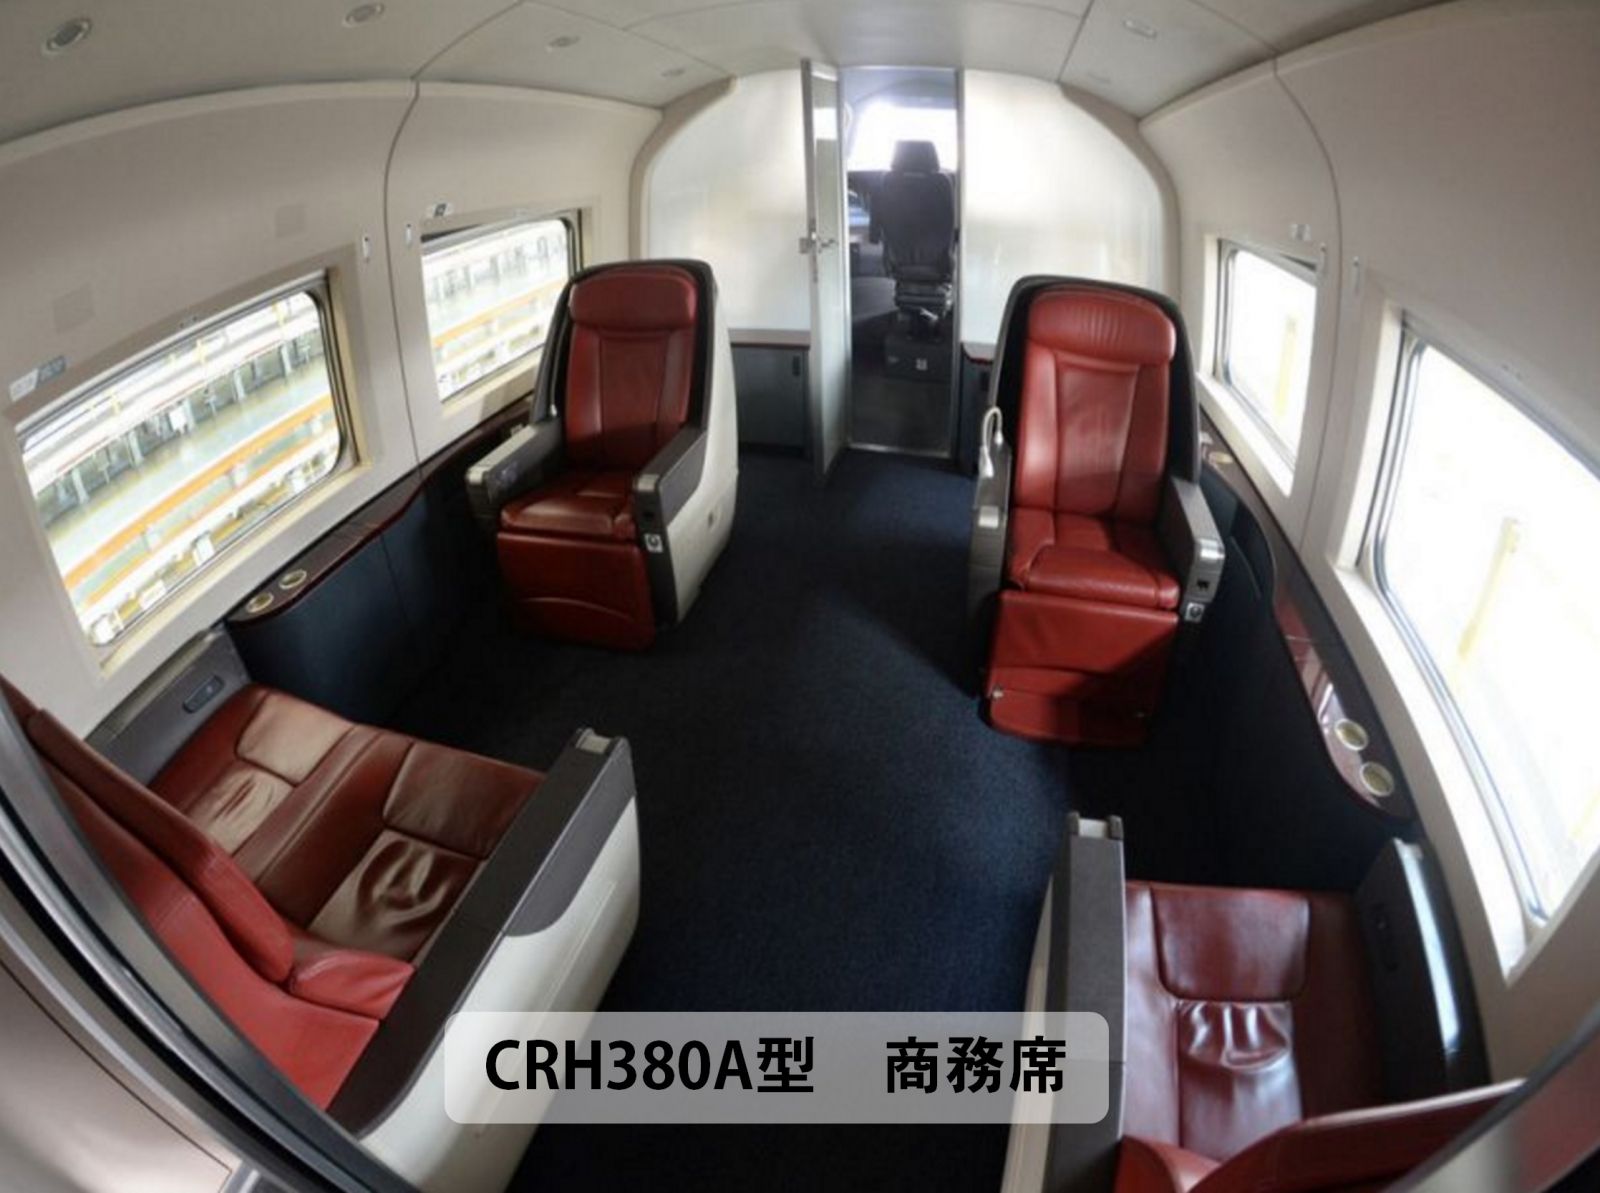 中国高速鉄道CRH380C型電車